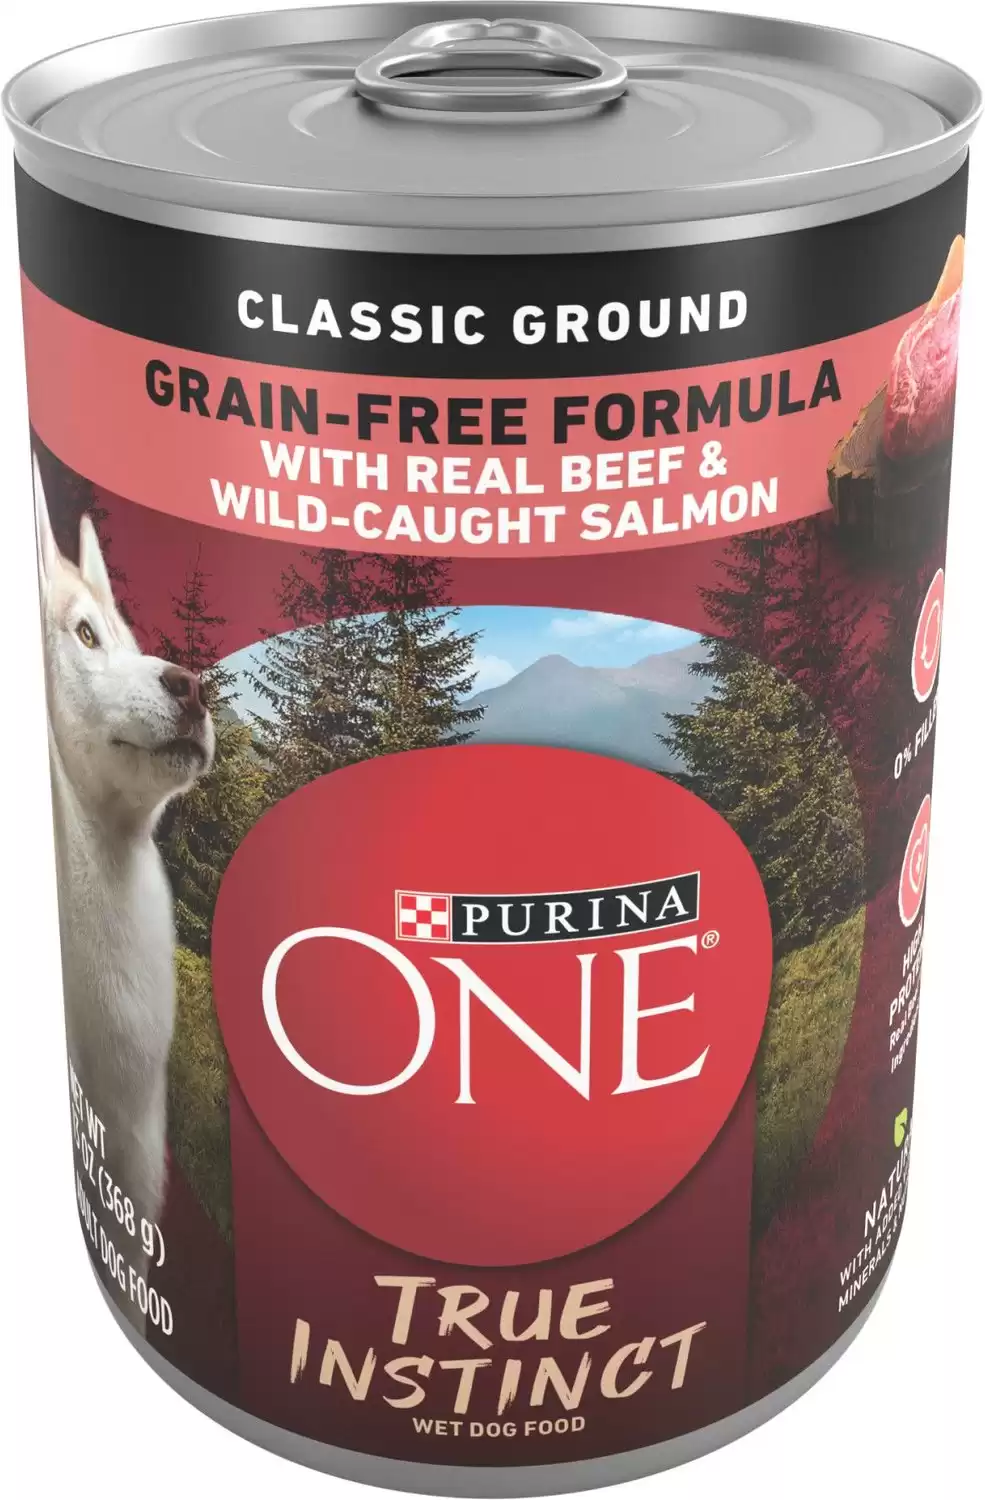 Purina ONE True Instinct Classic Alimento molido para perros enlatado